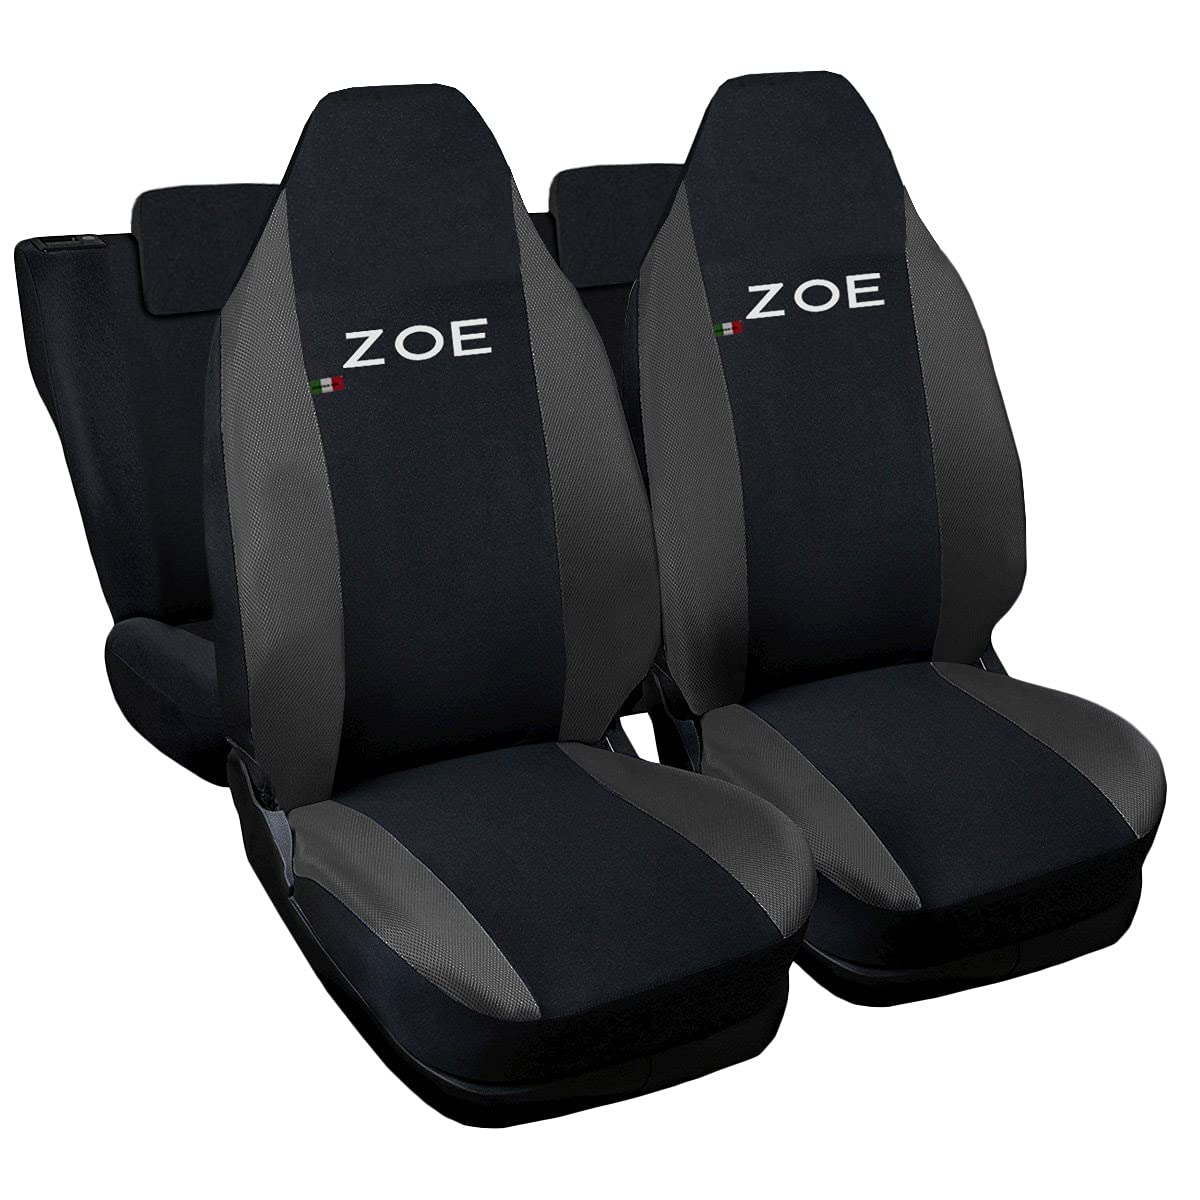 Lupex Shop Autositzbezüge kompatibel mit Zoe zweifarbig schwarz - dunkelgrau von Lupex Shop